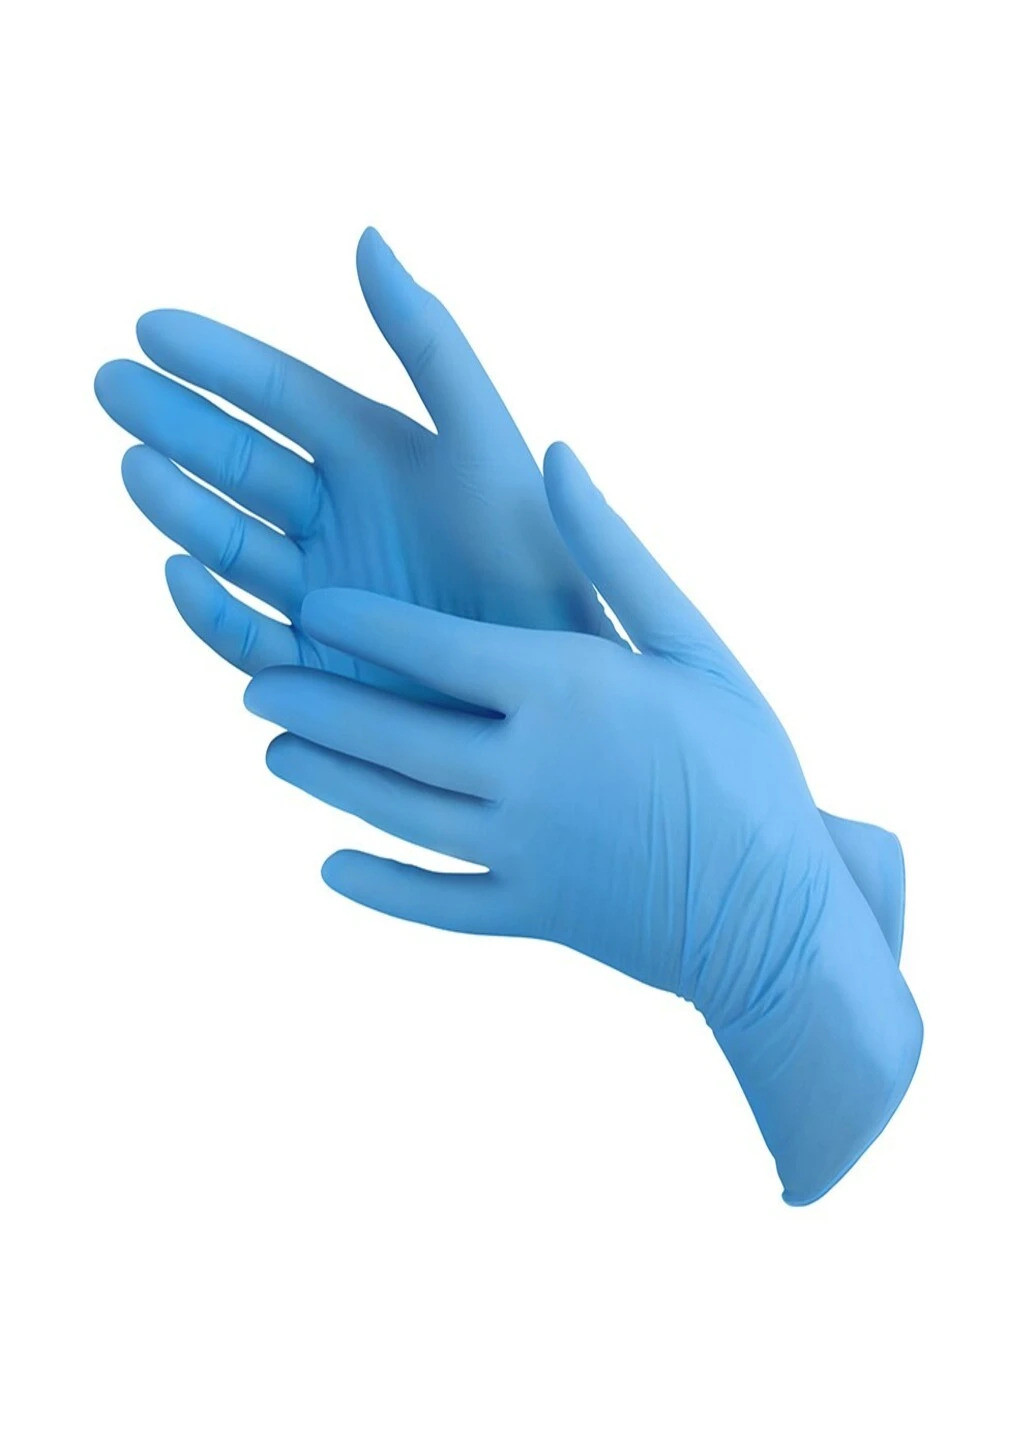 Перчатки нитриловые Vitals Blue смотровые текстурированные без пудры голубые размер L 100 шт (3 г.) голубые Medicom (259569982)